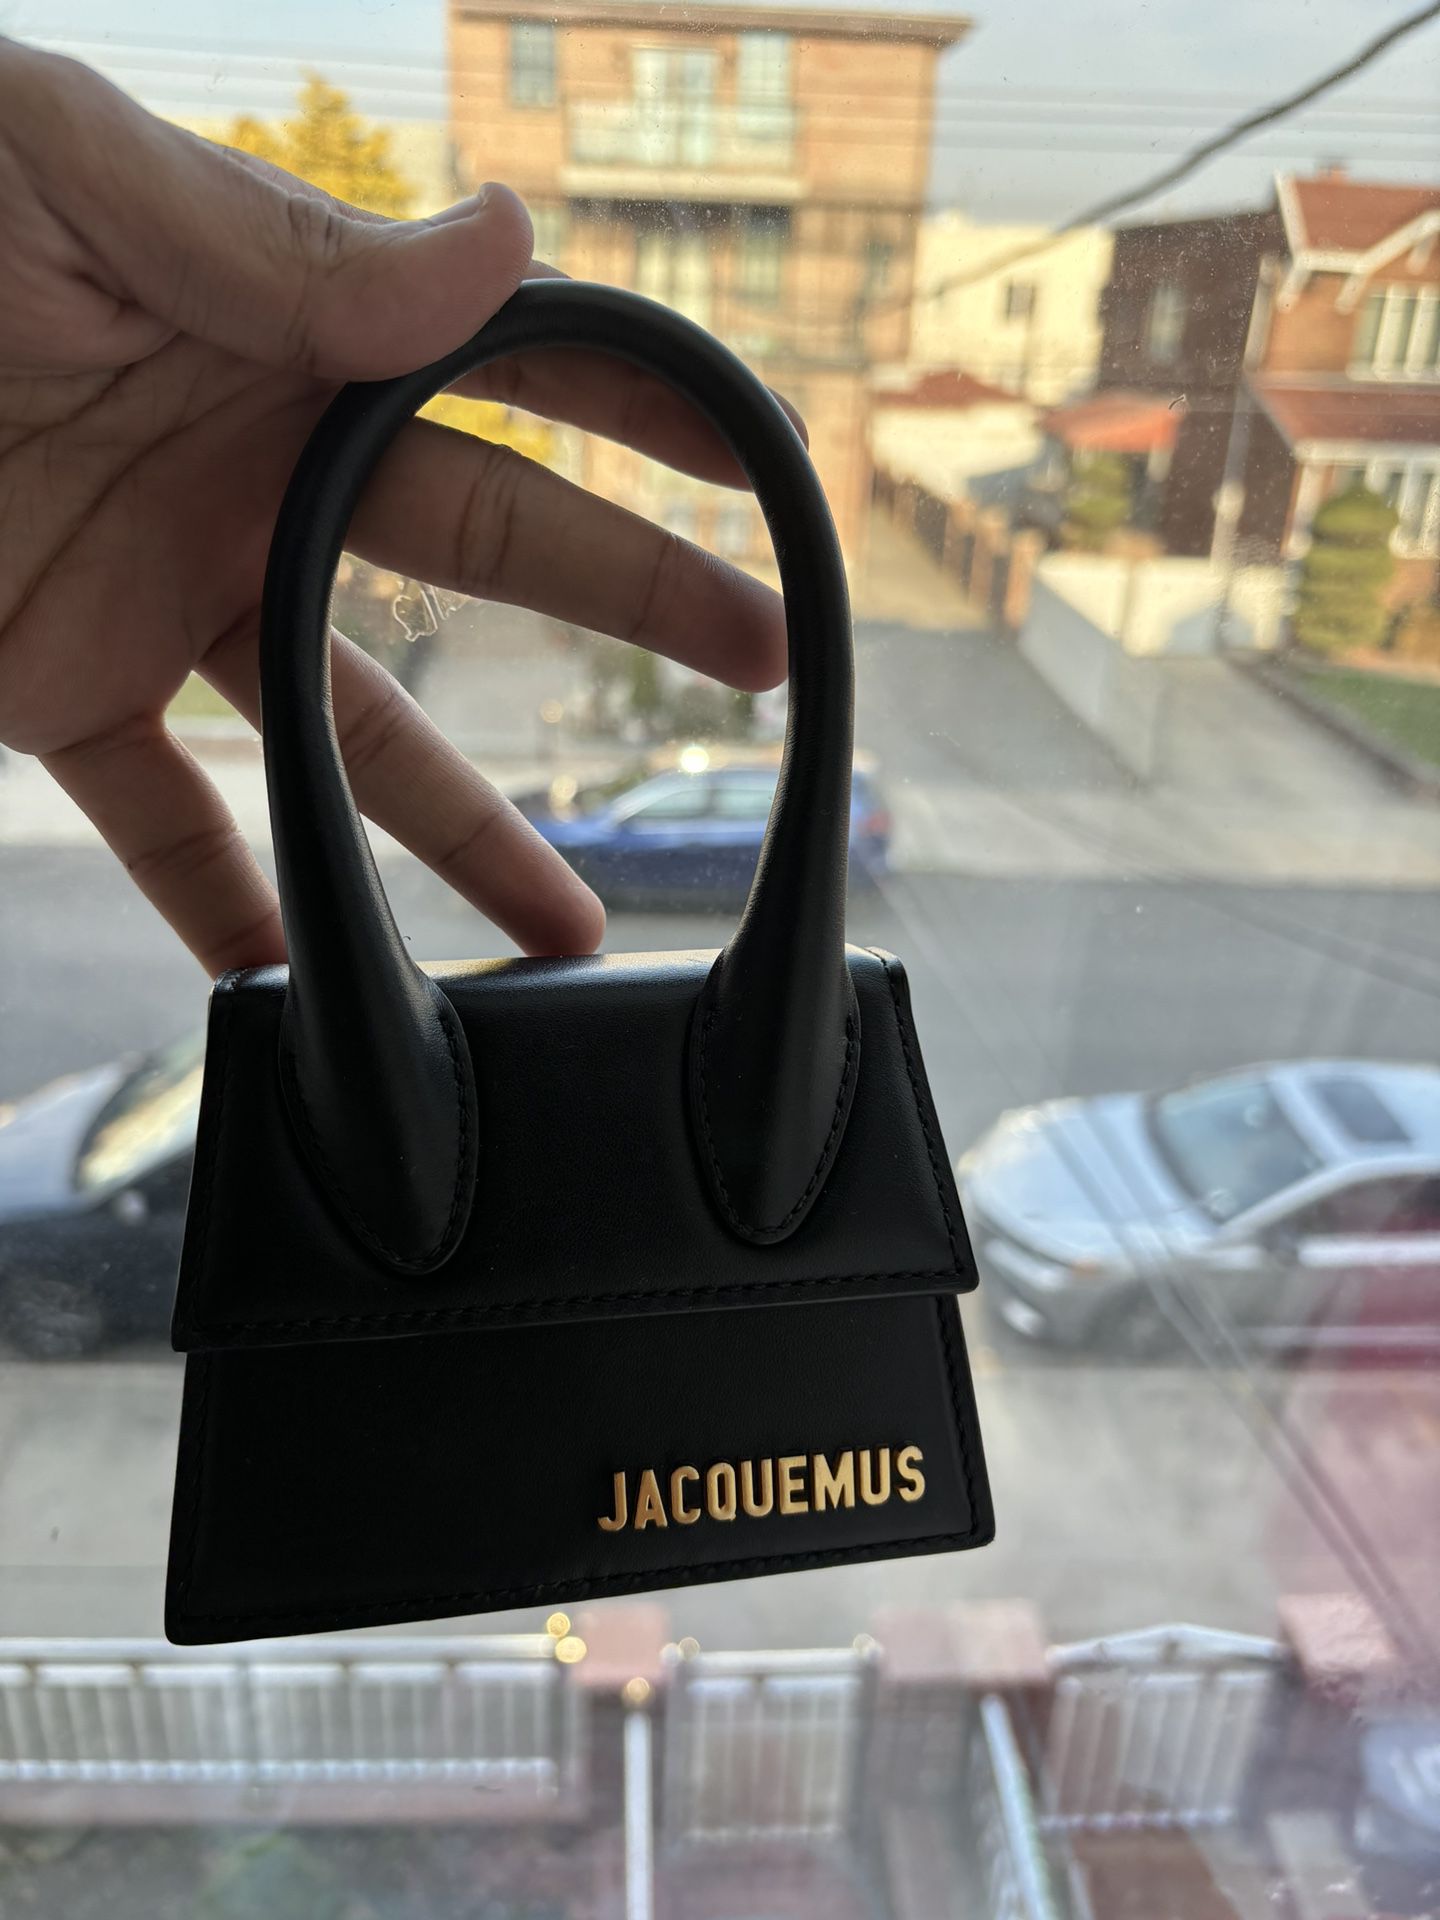 Jacquemus Mini Bag Authentic 